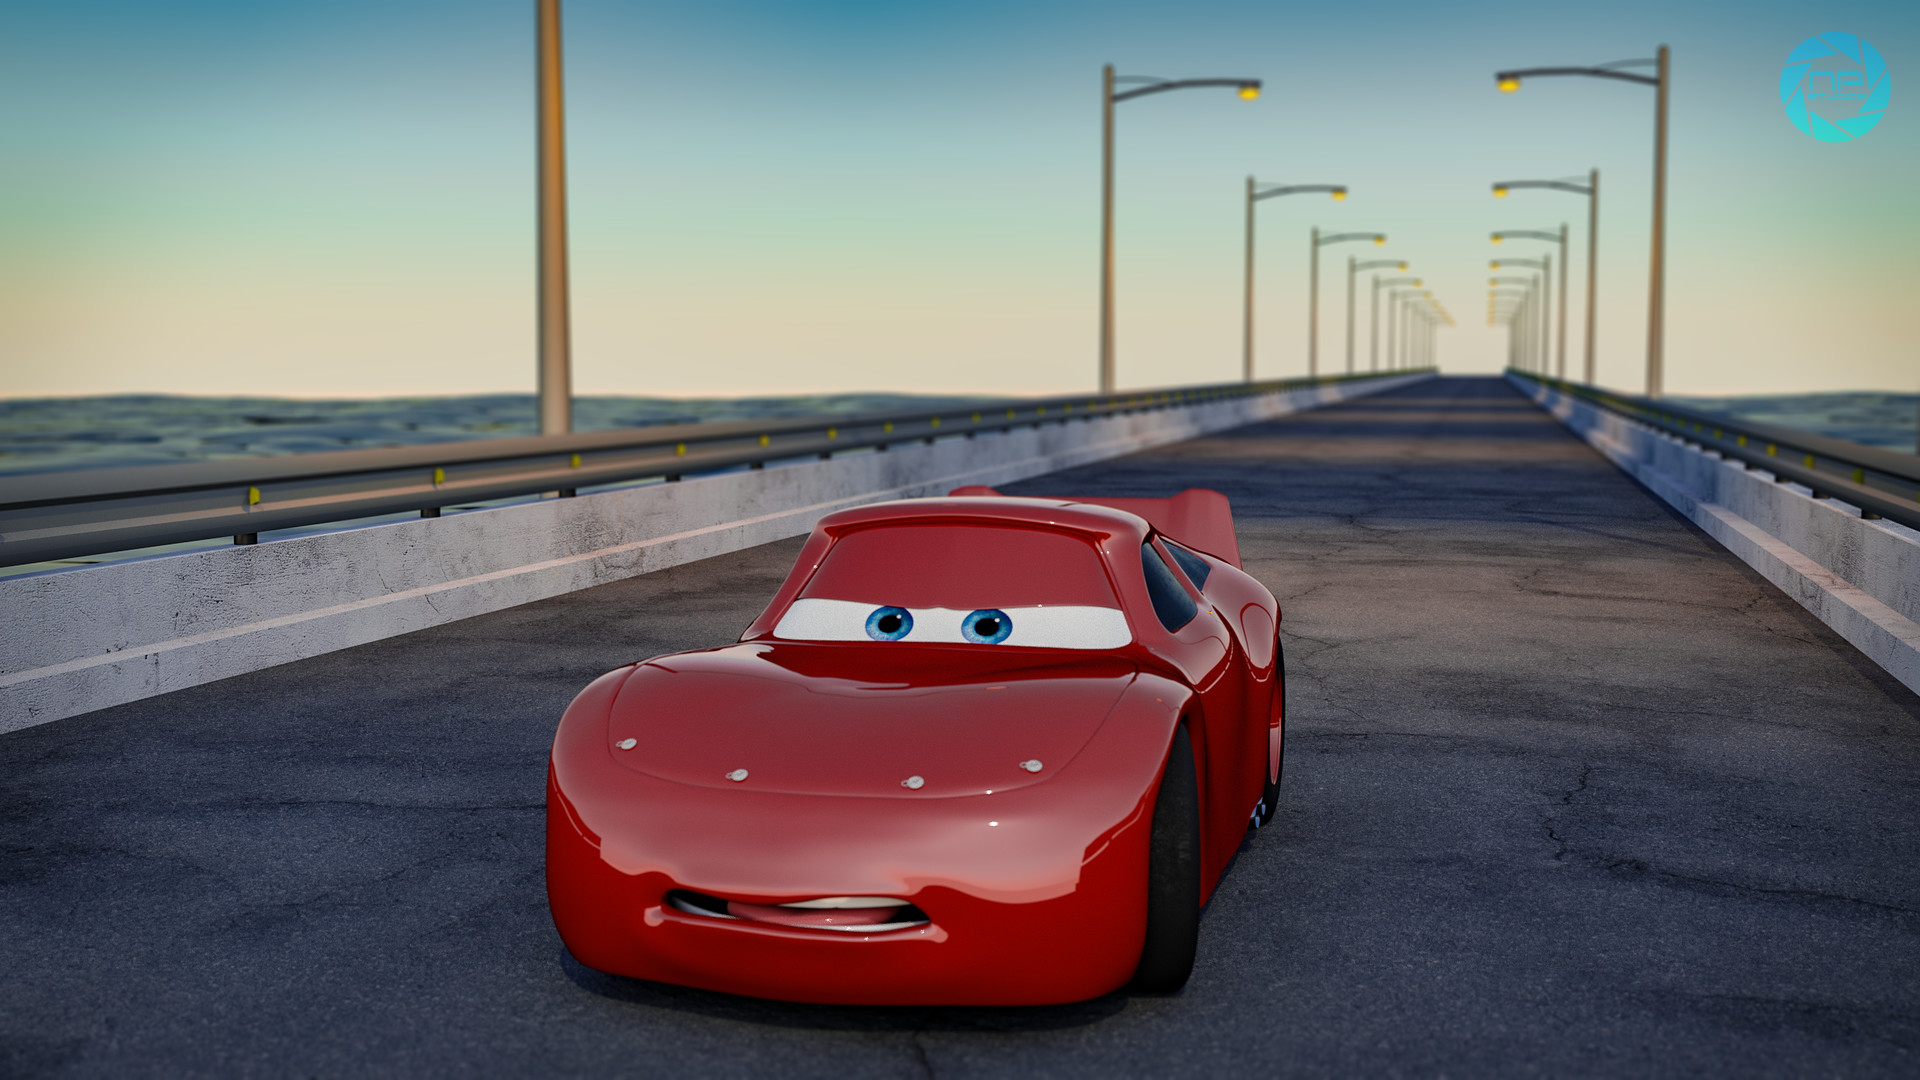 ArtStation - Lightning McQueen Model